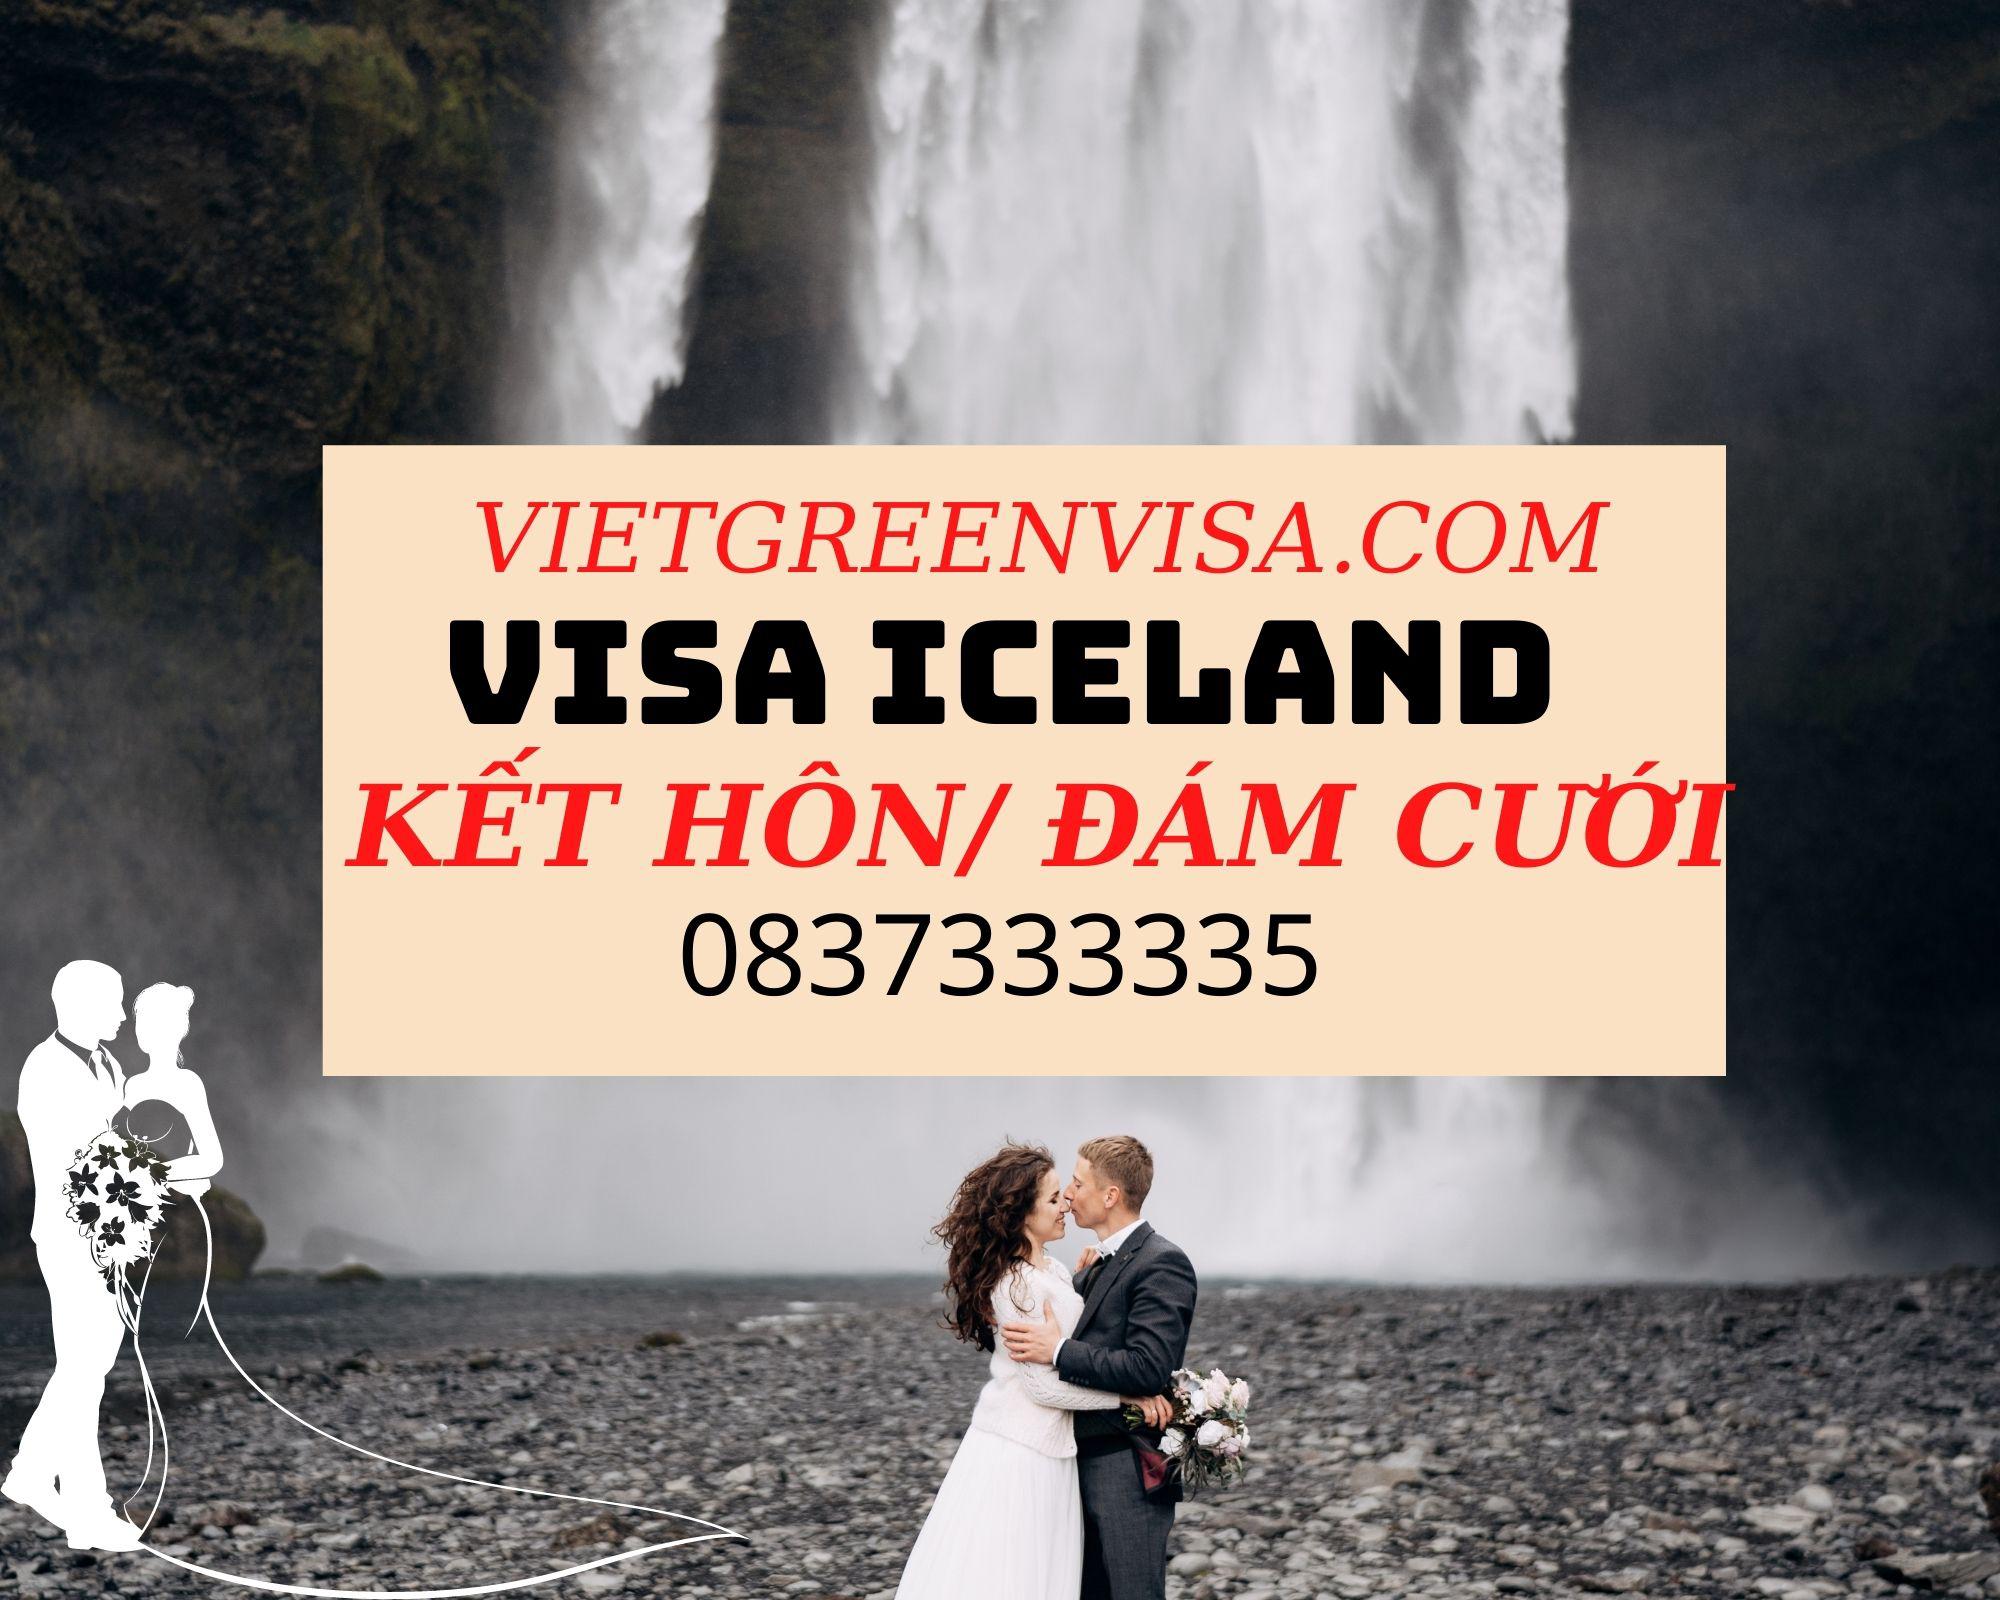 Dịch vụ xin visa Iceland kết hôn, tổ chức đám cưới